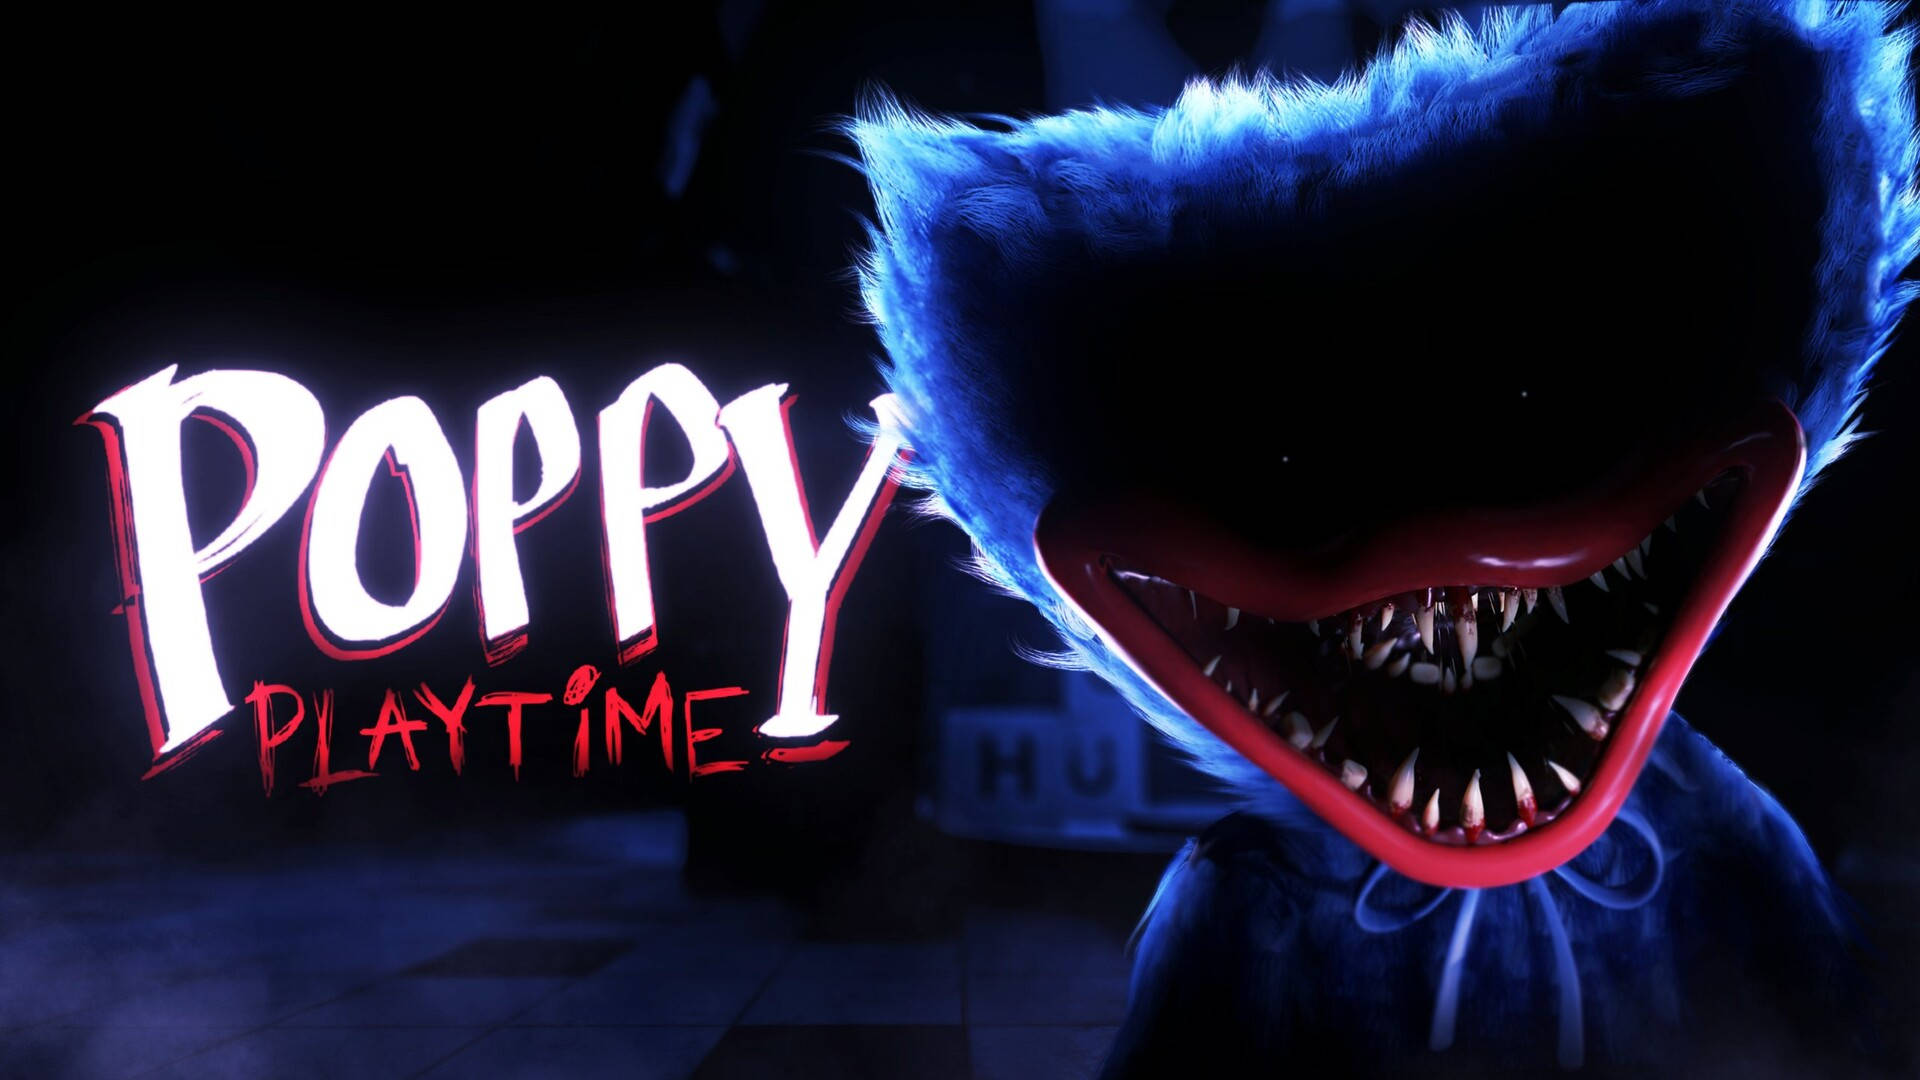 Poppy Playtime Poster Background